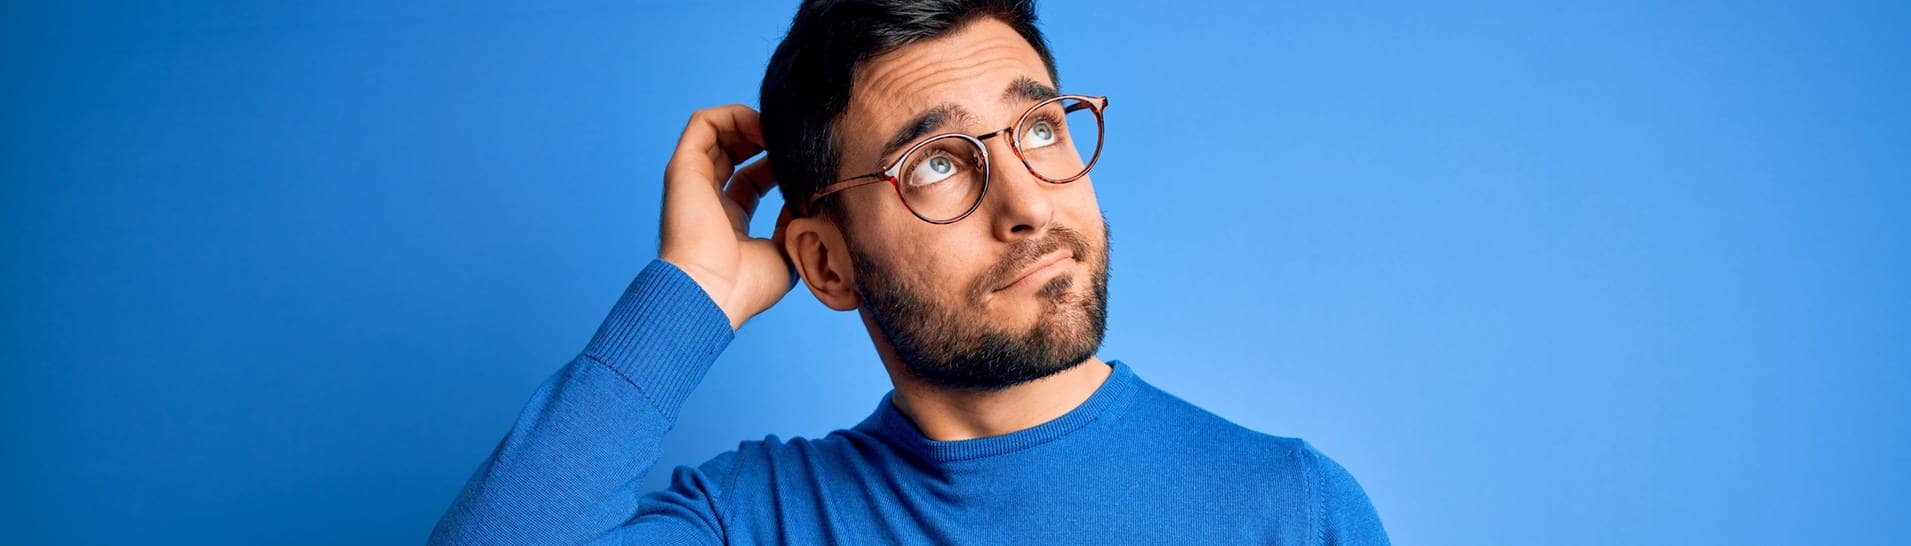 Junger Mann mit Brille und blauem Pullover schaut nachdenkend in die Luft. Symbolbild für Sätze, die du nur verstehst, wenn du Dialekt sprichst.